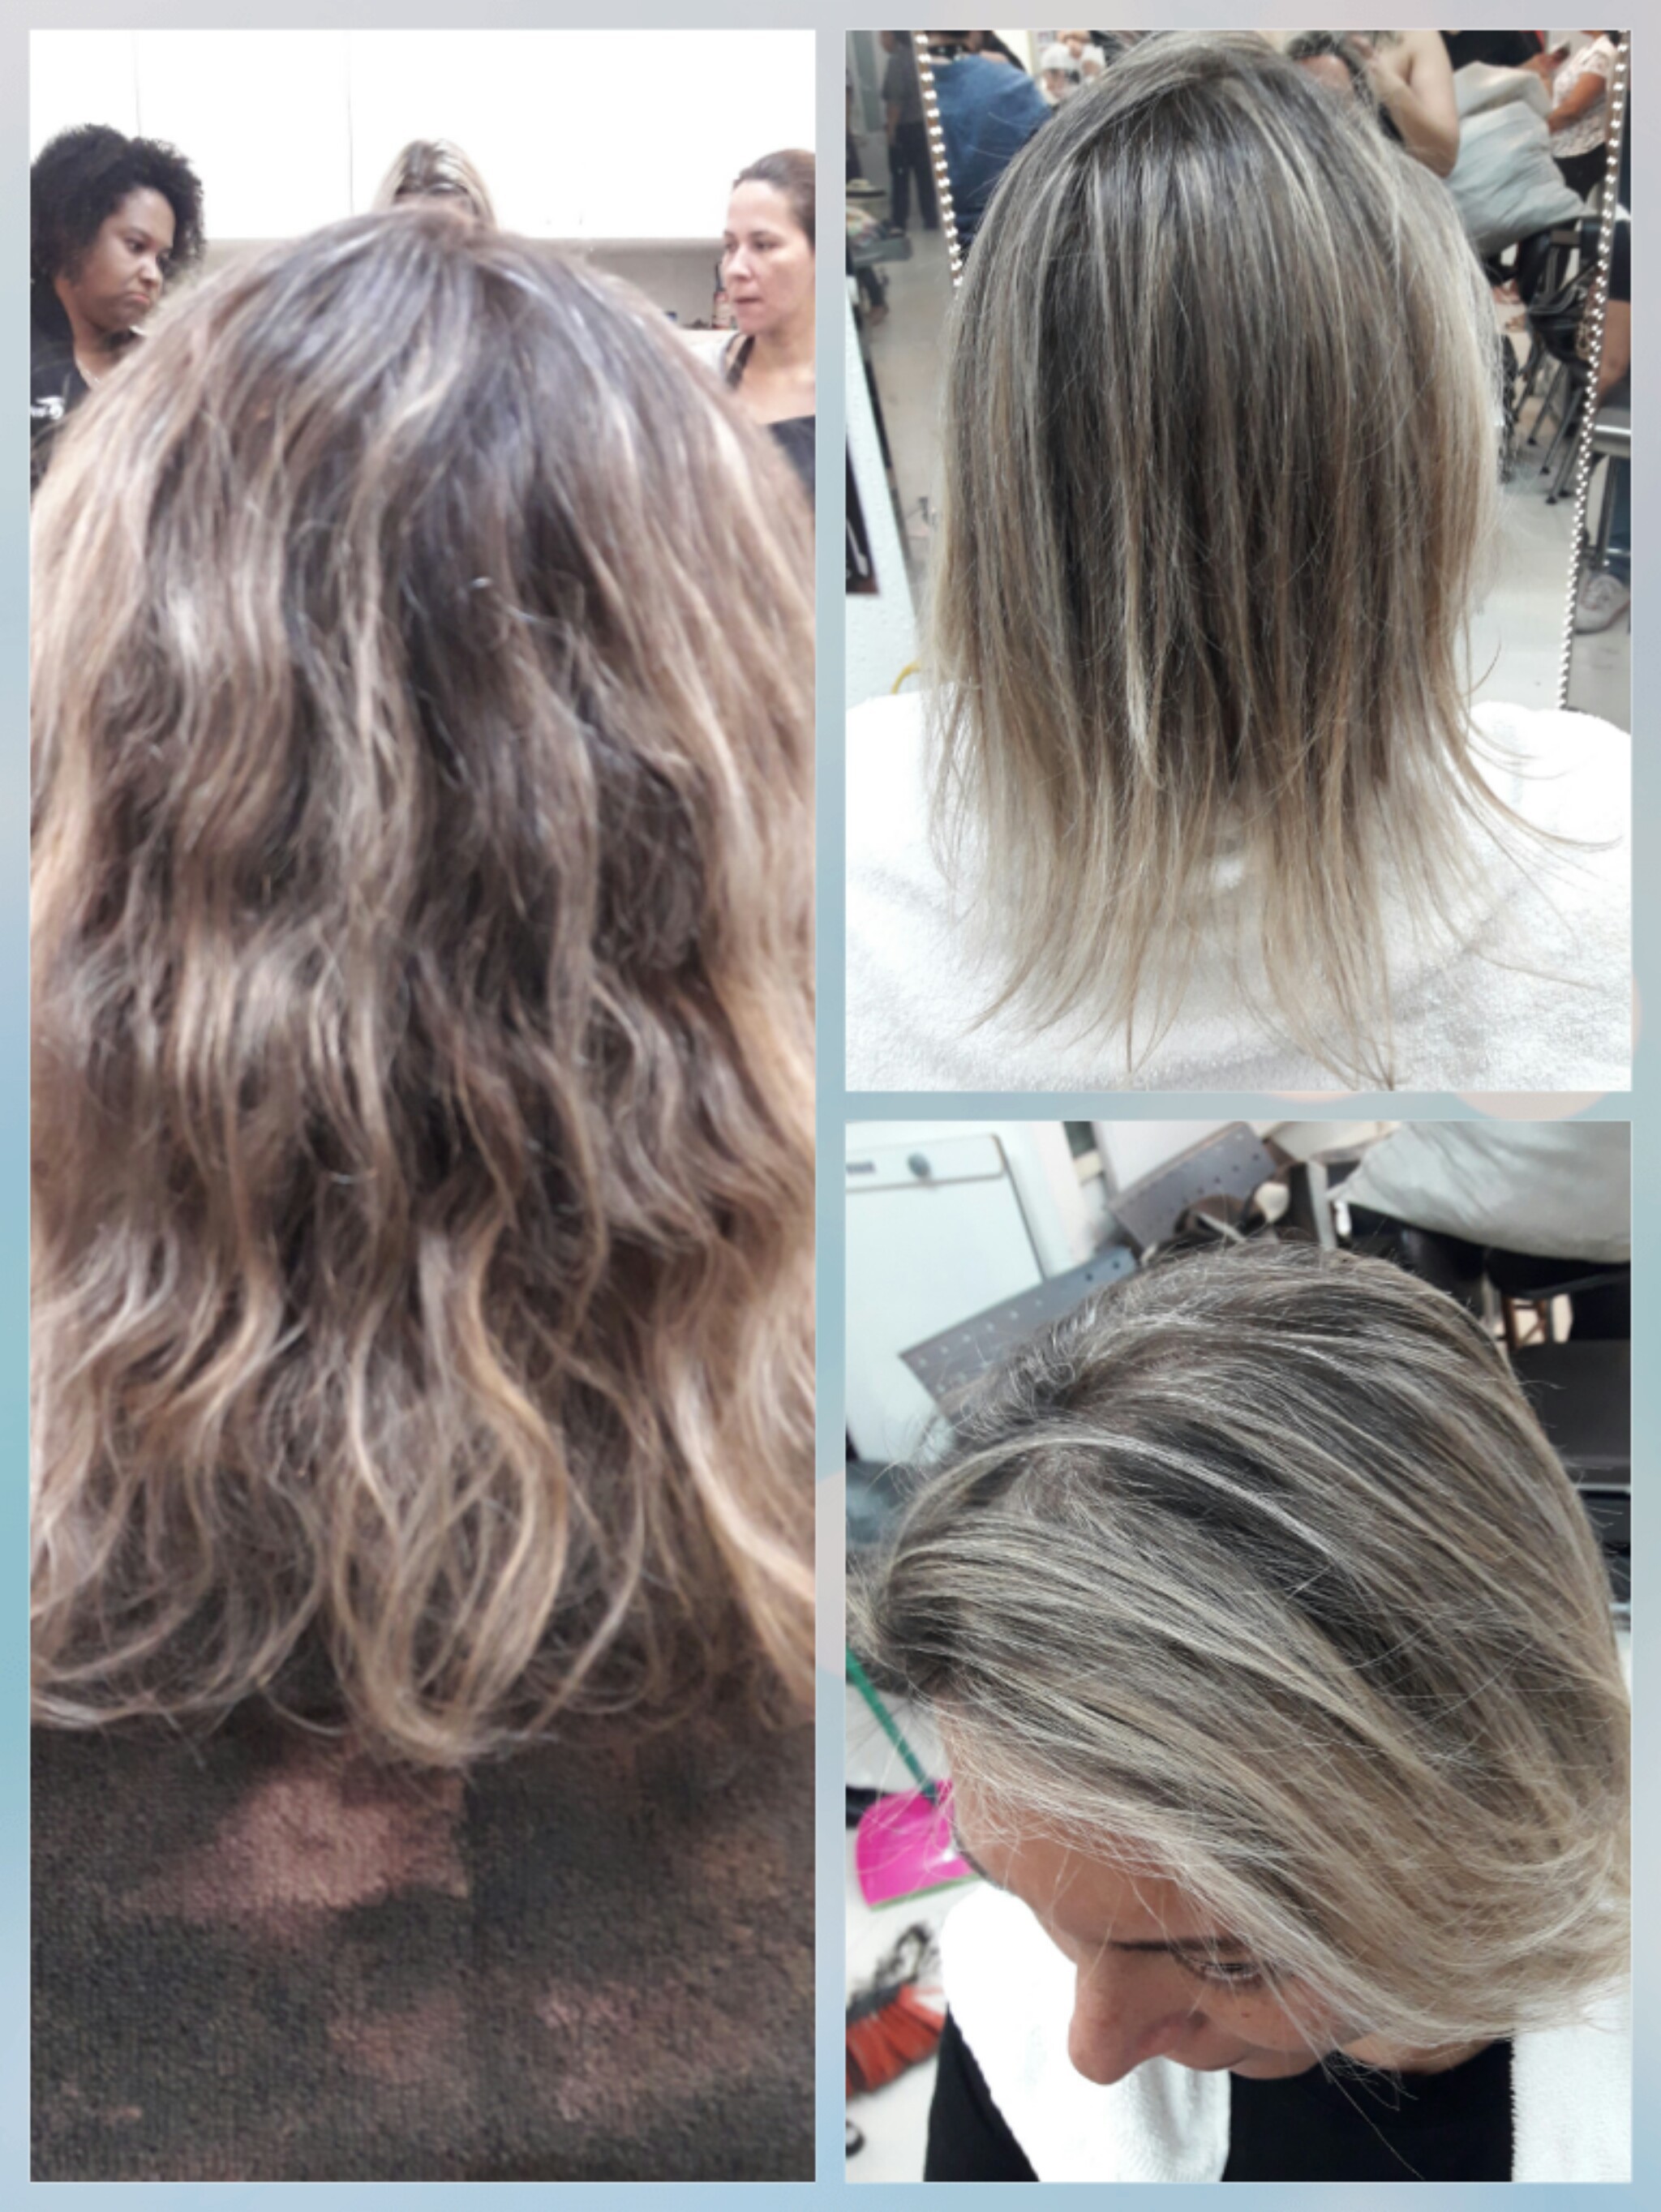 Retoque de luzes 😍
#hairstilyst #hairdresser #clientefeliz #amorpelaprofissão💓 cabelo auxiliar cabeleireiro(a)